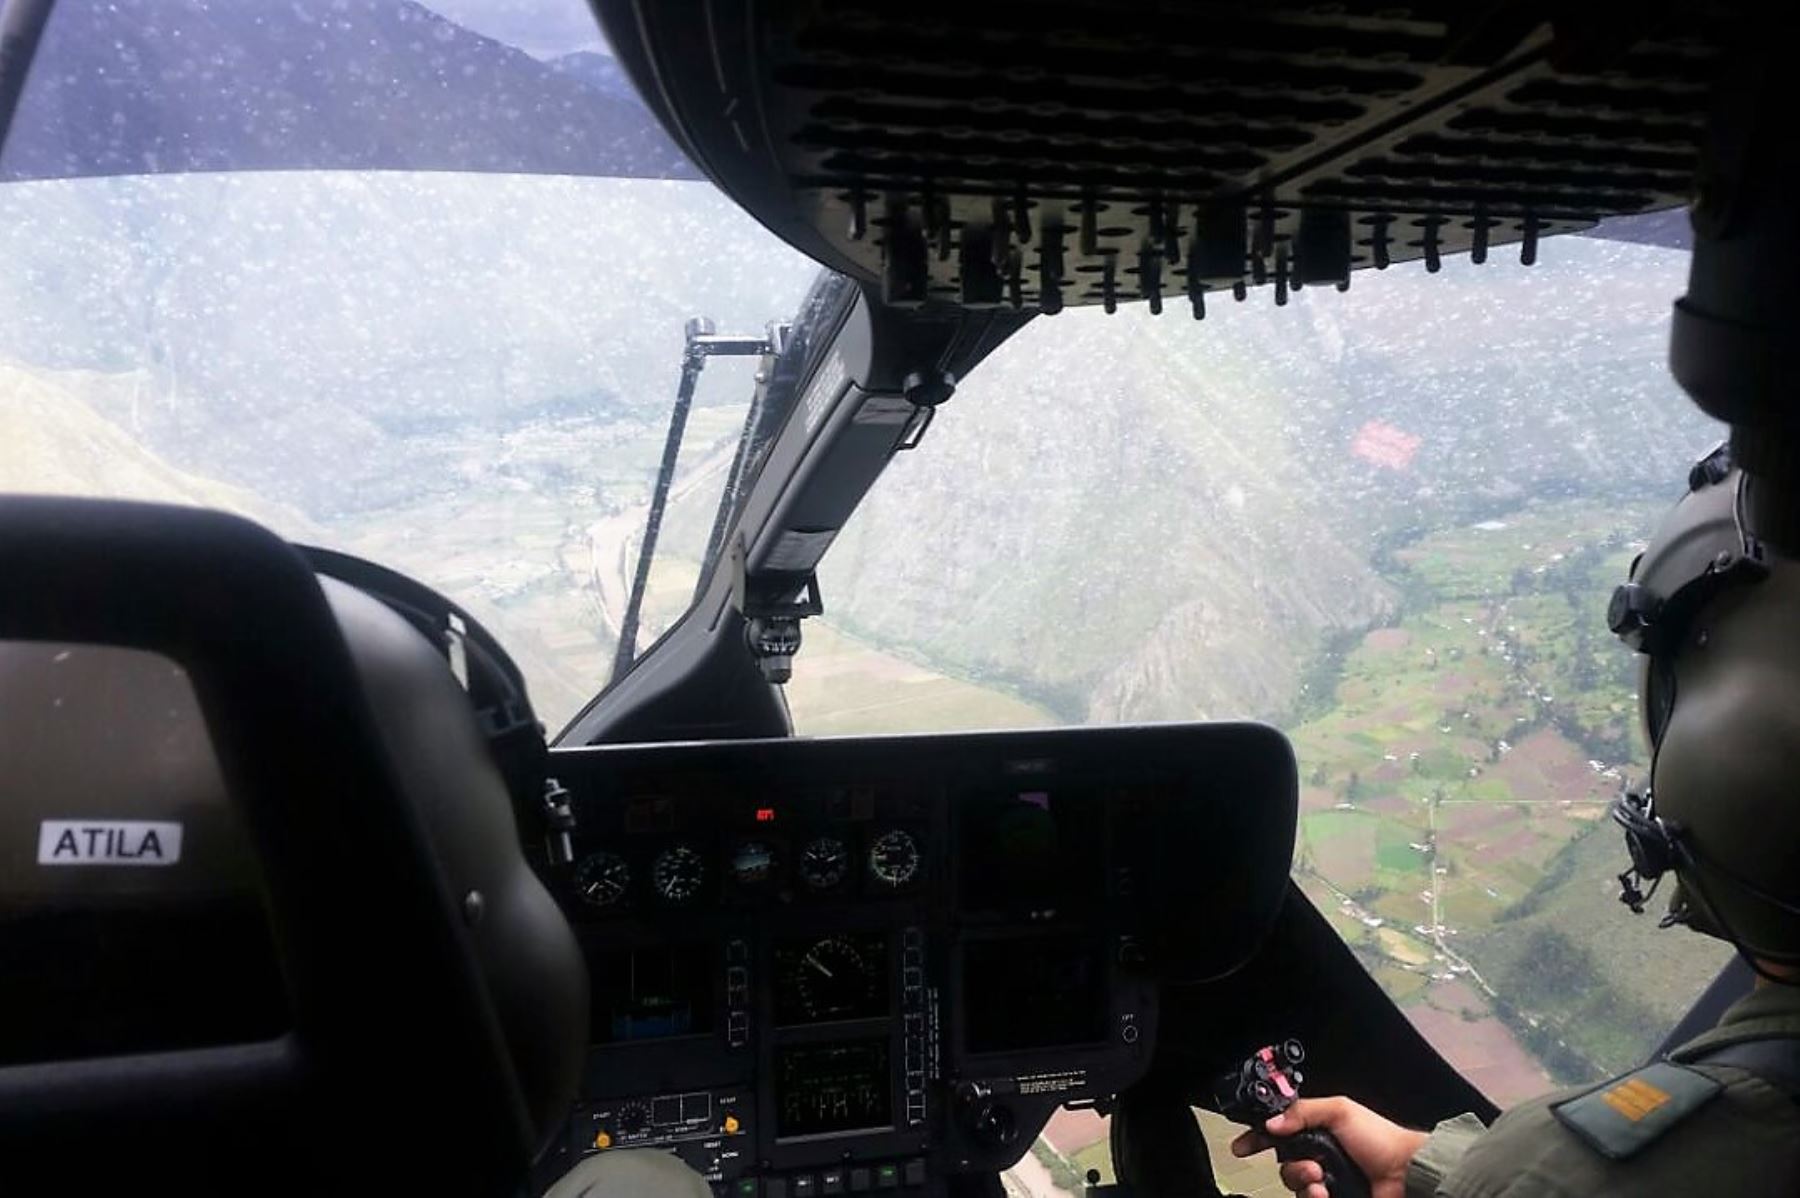 Lluvias y geografía agreste dificultan la búsqueda de turista española, Nathaly Salazar, desaparecida en Cusco. ANDINA